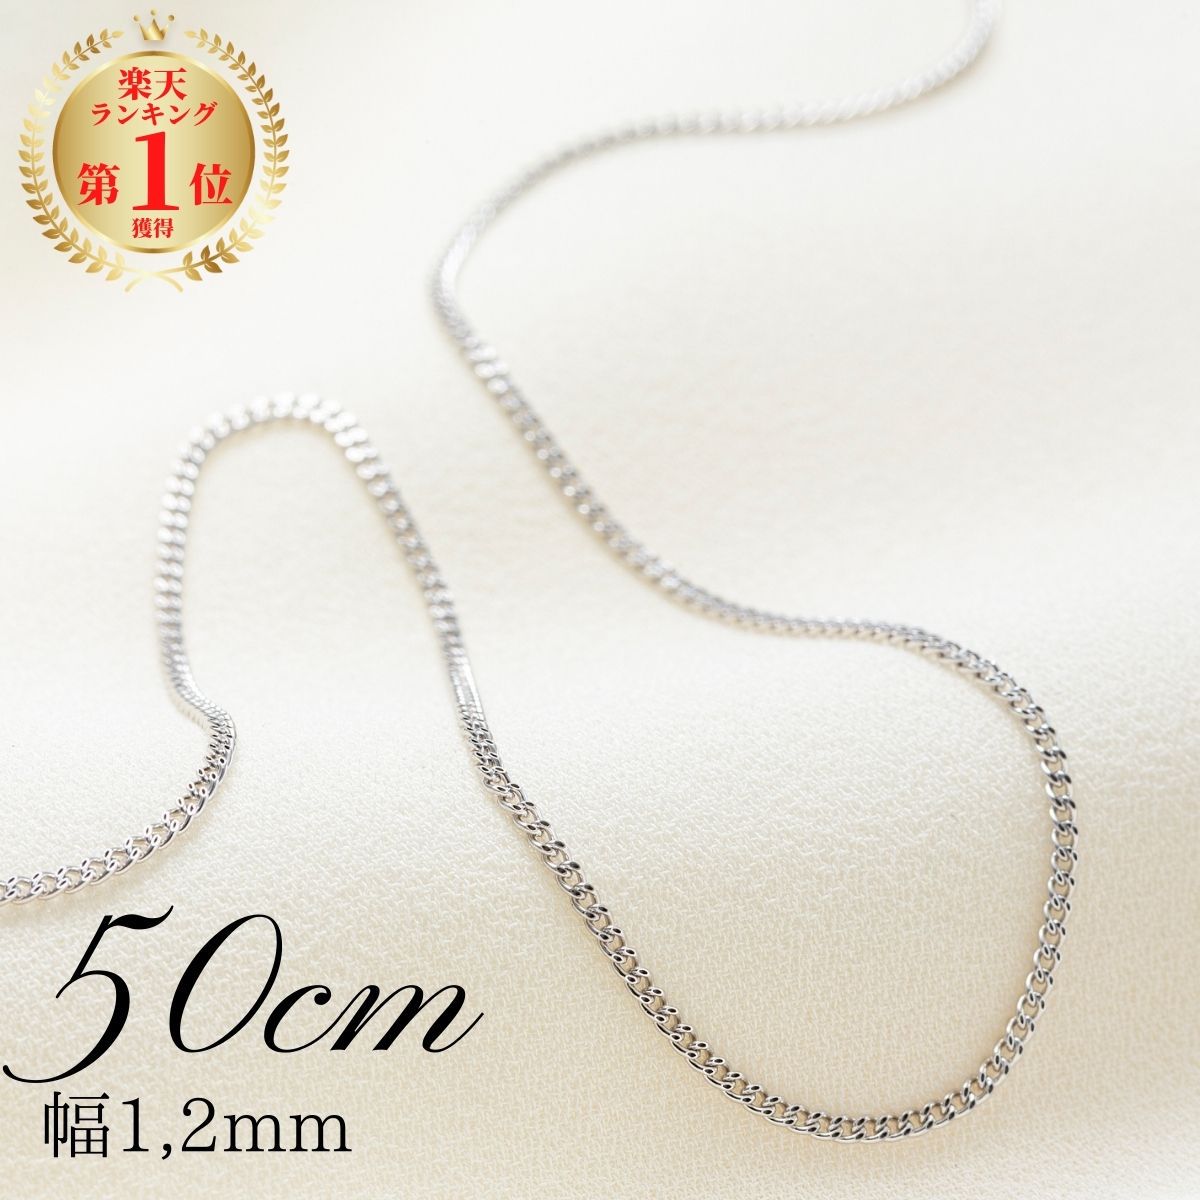 《最高品質/日本製18金》喜平ネックレスチェーン/50cm/K18WG ネックレス 高級品市場